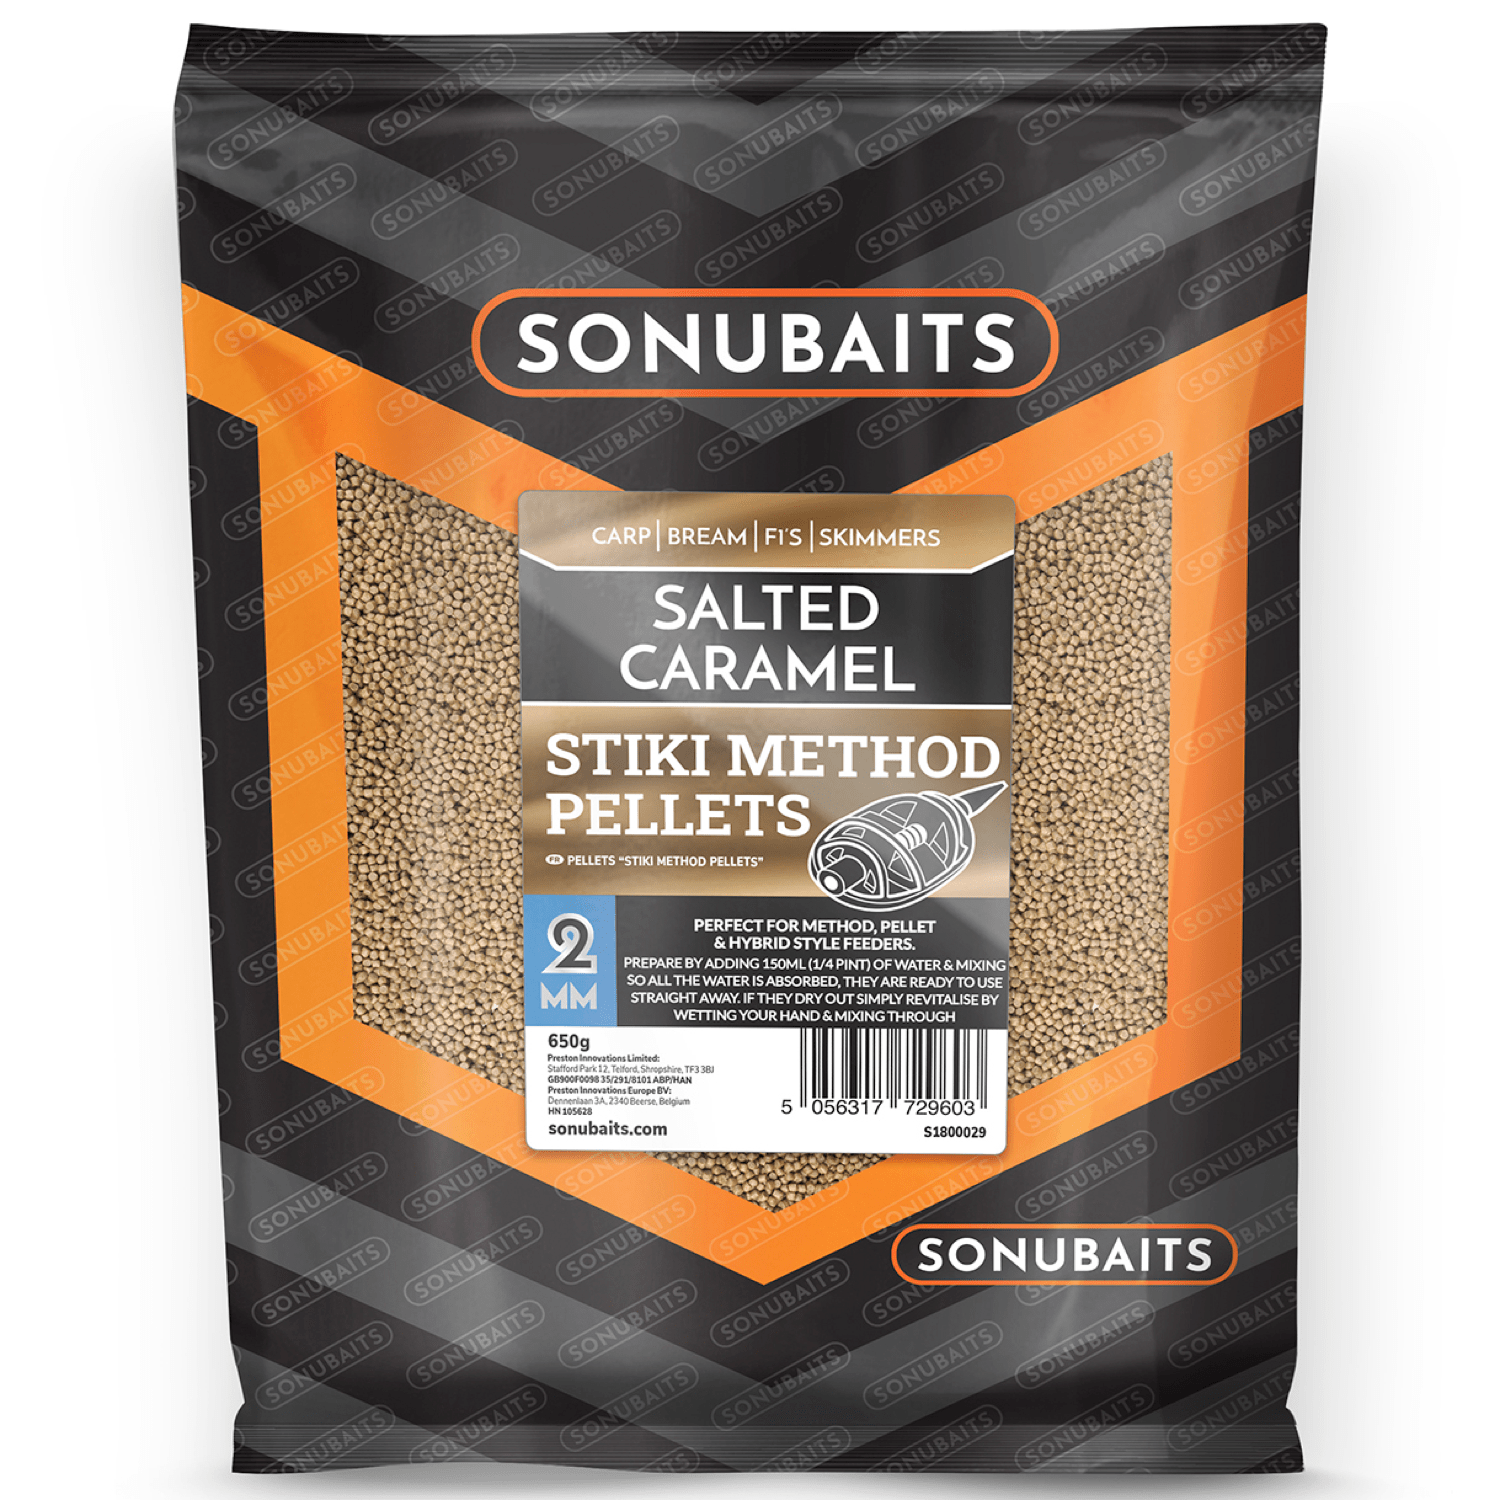 Sonubaits stiki method pellets salted caramel